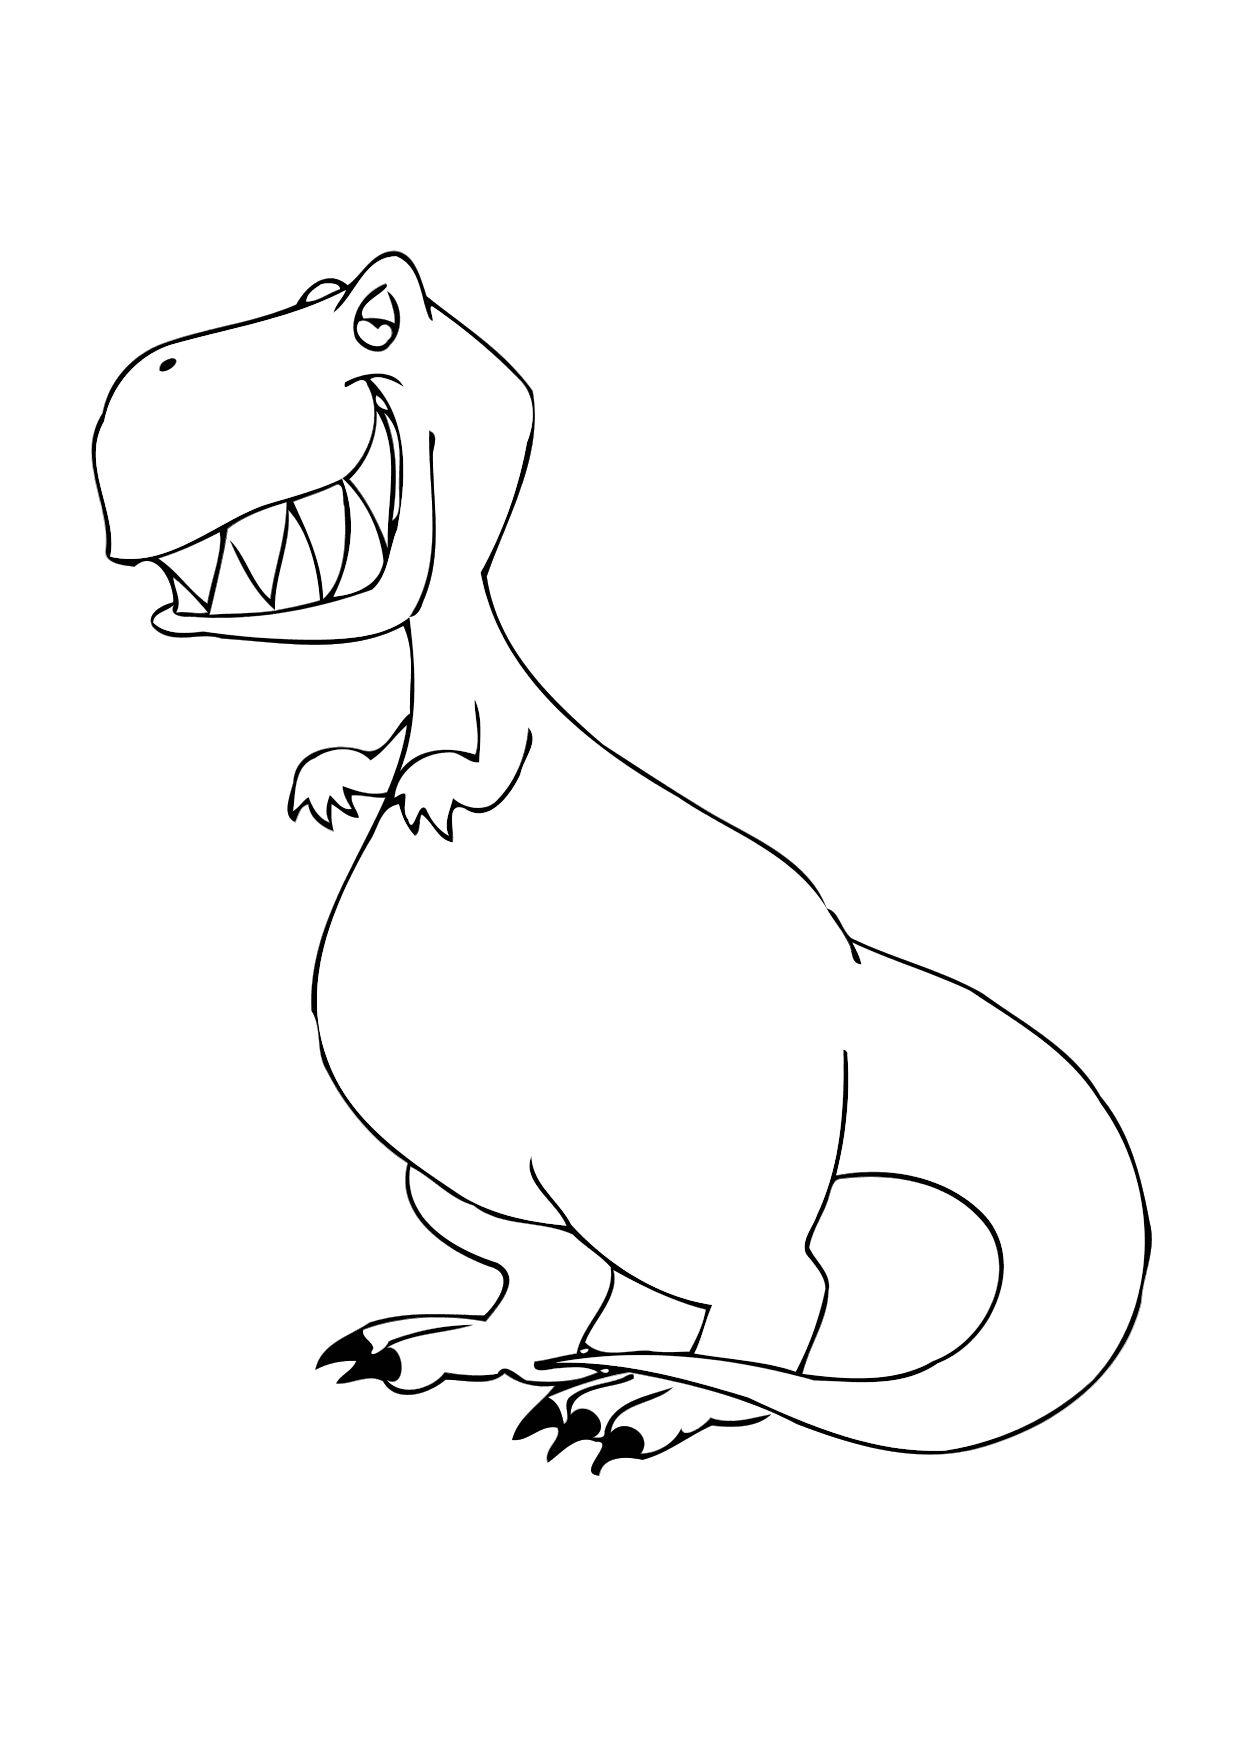 Dibujo para colorear Dinosaurio - Dibujos Para Imprimir Gratis - Img 12304